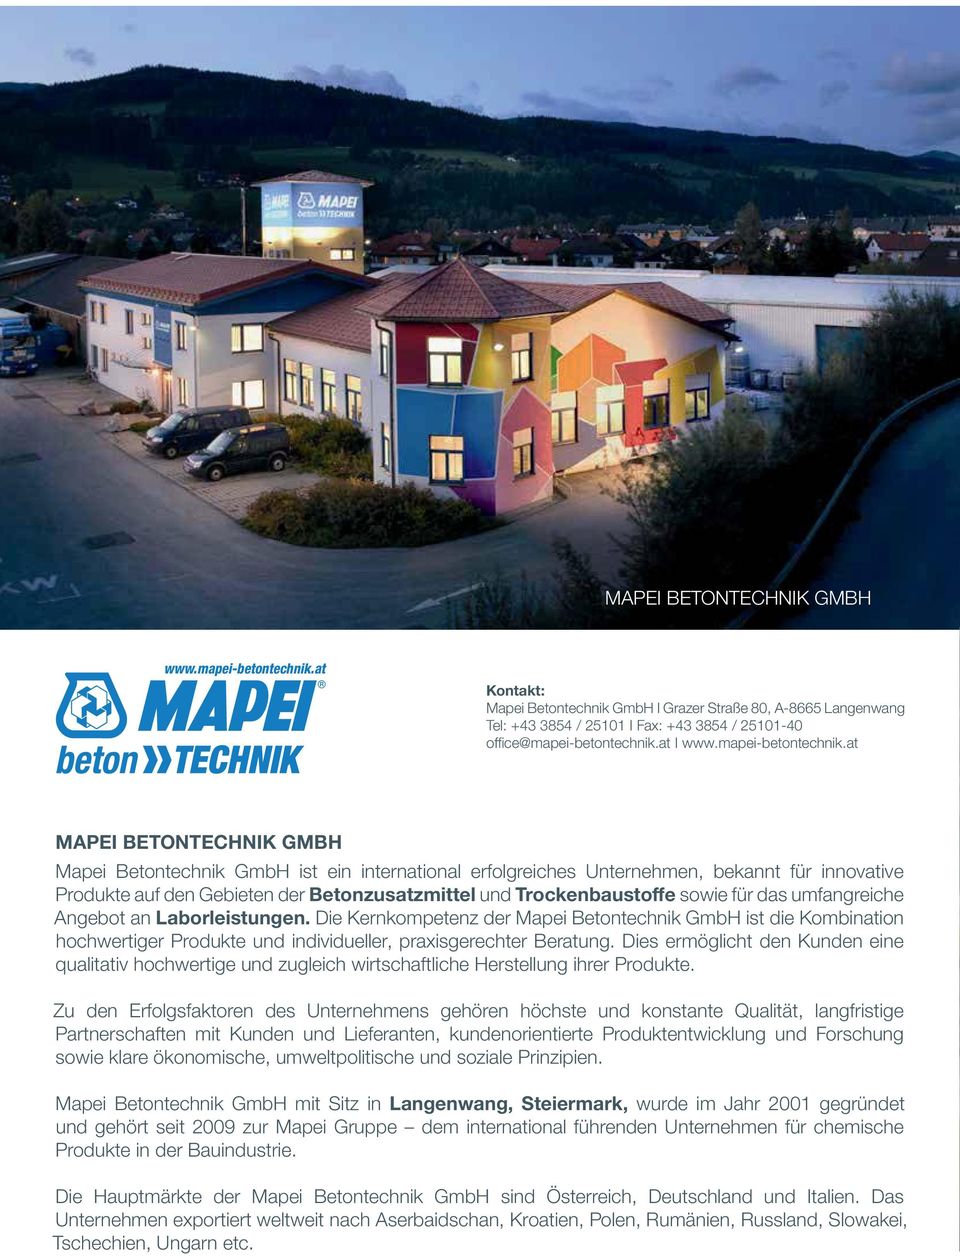 at MAPEI BETONTECHNIK GMBH Mapei Betontechnik GmbH ist ein international erfolgreiches Unternehmen, bekannt für innovative Produkte auf den Gebieten der Betonzusatzmittel und Trockenbaustoffe sowie